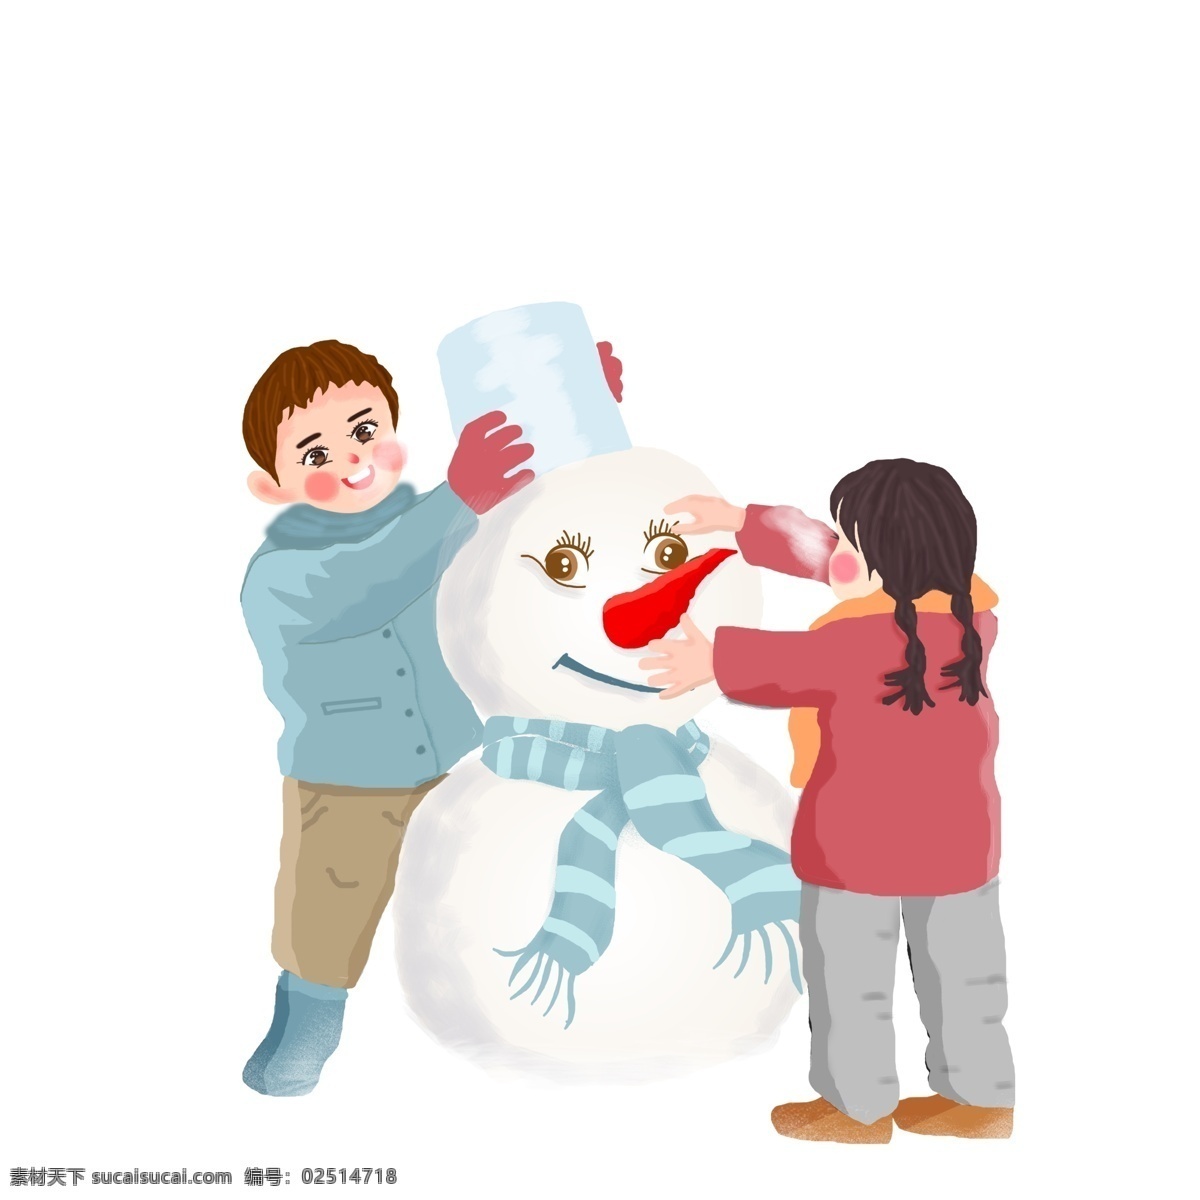 堆 雪人 男孩 女孩 图案 元素 卡通人物 设计元素 简约 创意元素 堆雪人 手绘 手绘图案 手绘元素